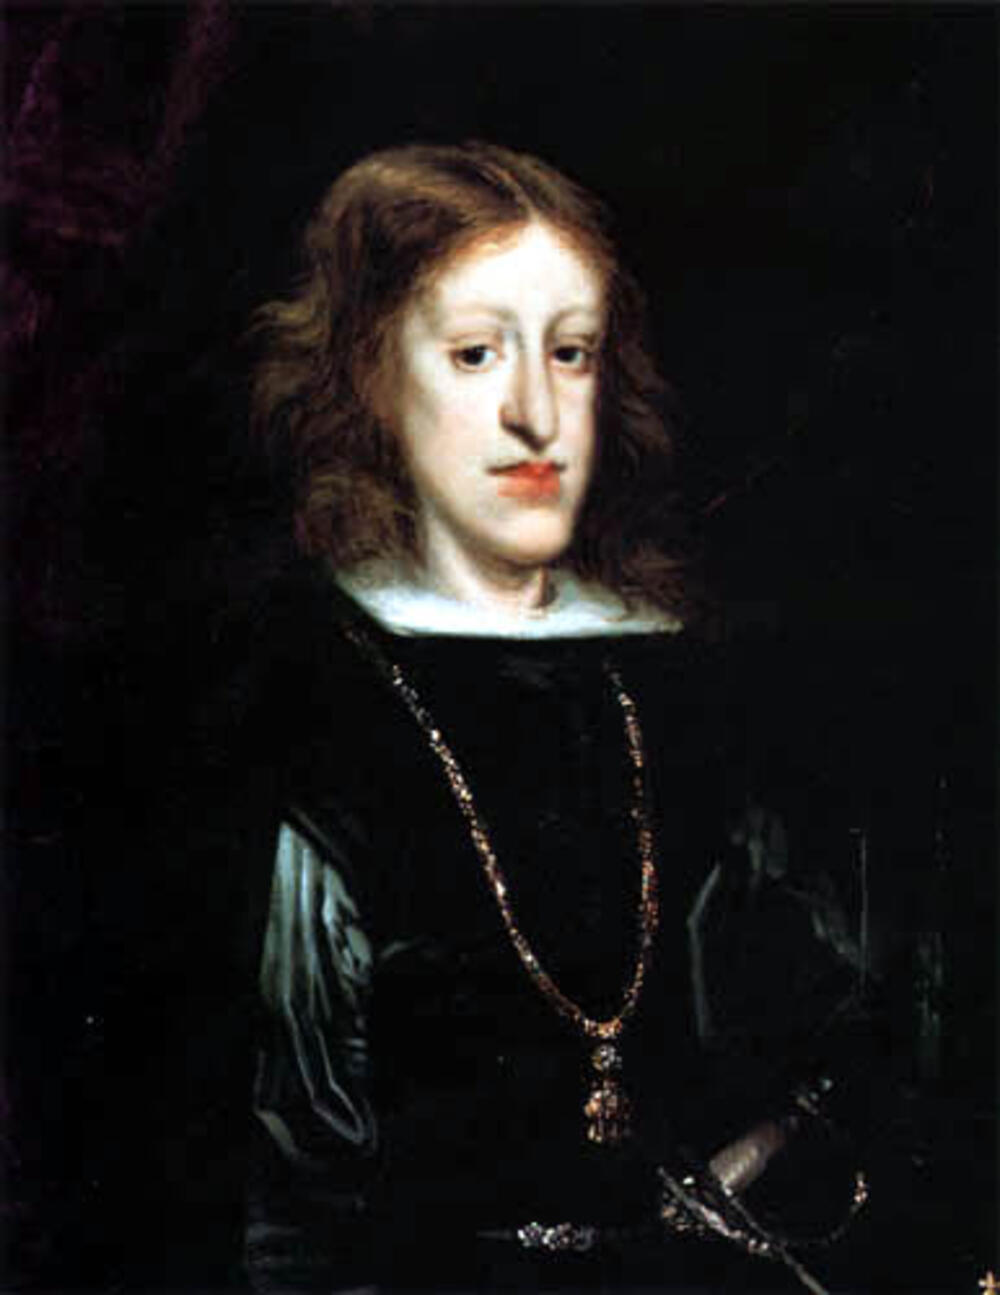 Slike kralja Karlosa II bile su ulepšane, jer kralj nije izgledao ovako